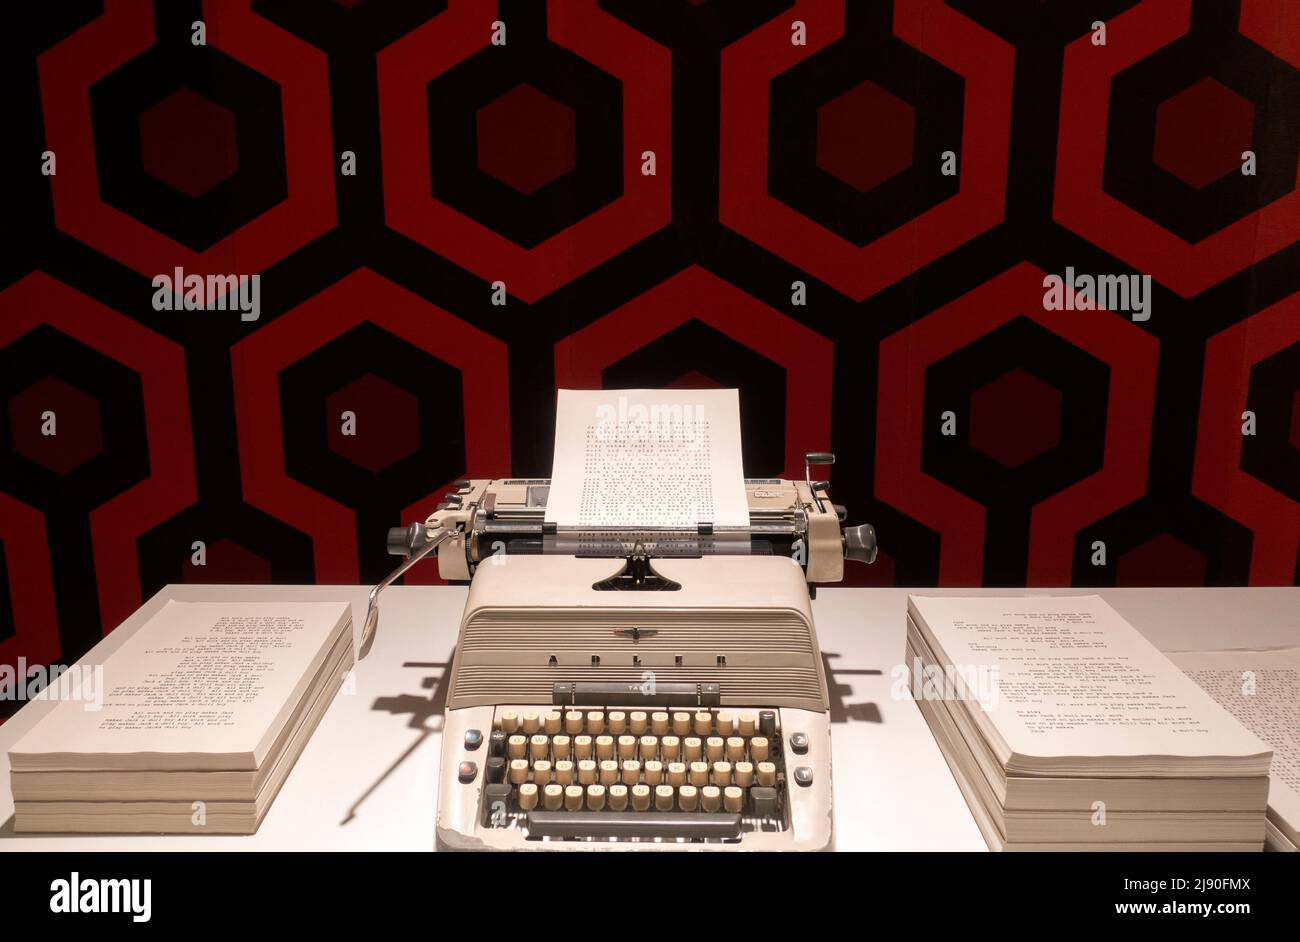 Schreibmaschine, die im Film „der glänzende“ verwendet wird.Stanley Kubrick Ausstellung.CCCB Museum.Barcelona.Spanien Stockfoto